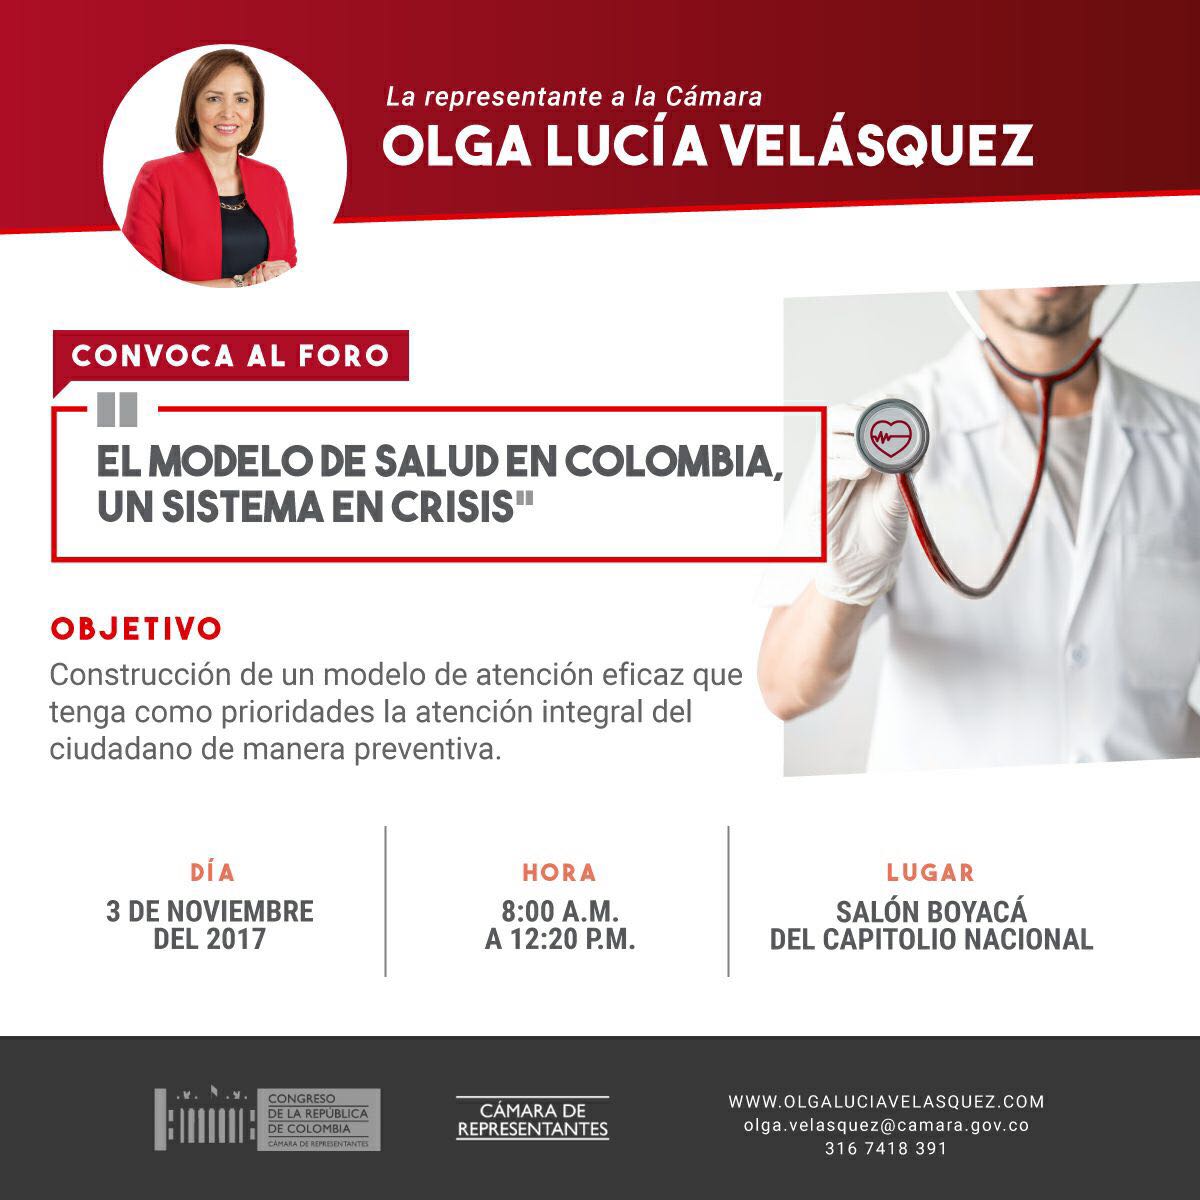 Foro: “EL modelo de salud en Colombia, un sistema en crisis”